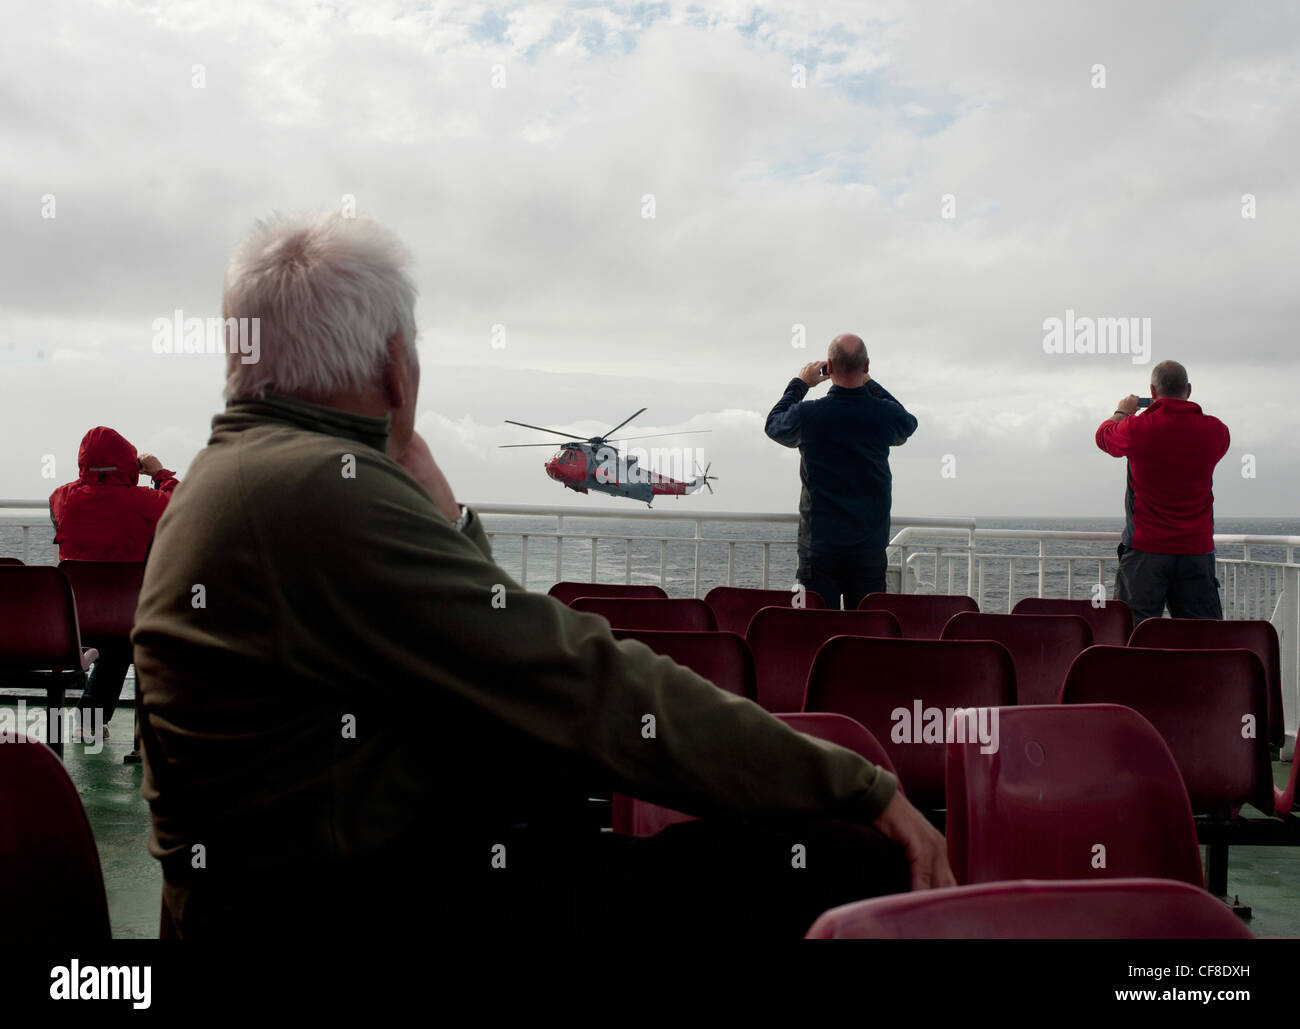 Un mare di RAF re elicottero vola sopra il mare come i passeggeri del traghetto a guardare e scattare fotografie dalla barca in Scozia. Foto Stock